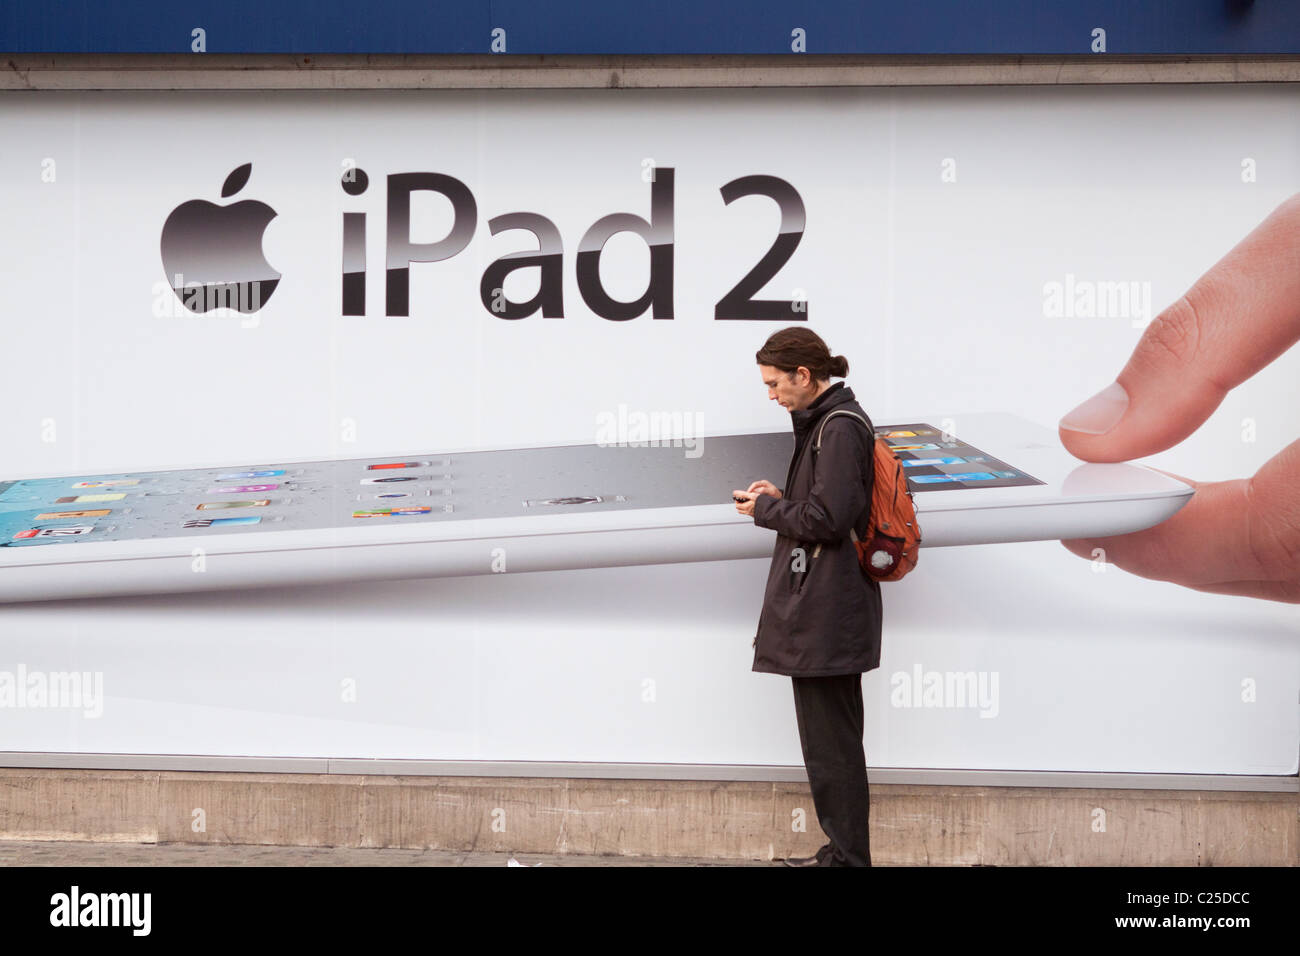 L'homme se tient en face de panneaux publicitaires l'iPad 2 d'Apple Inc. Banque D'Images